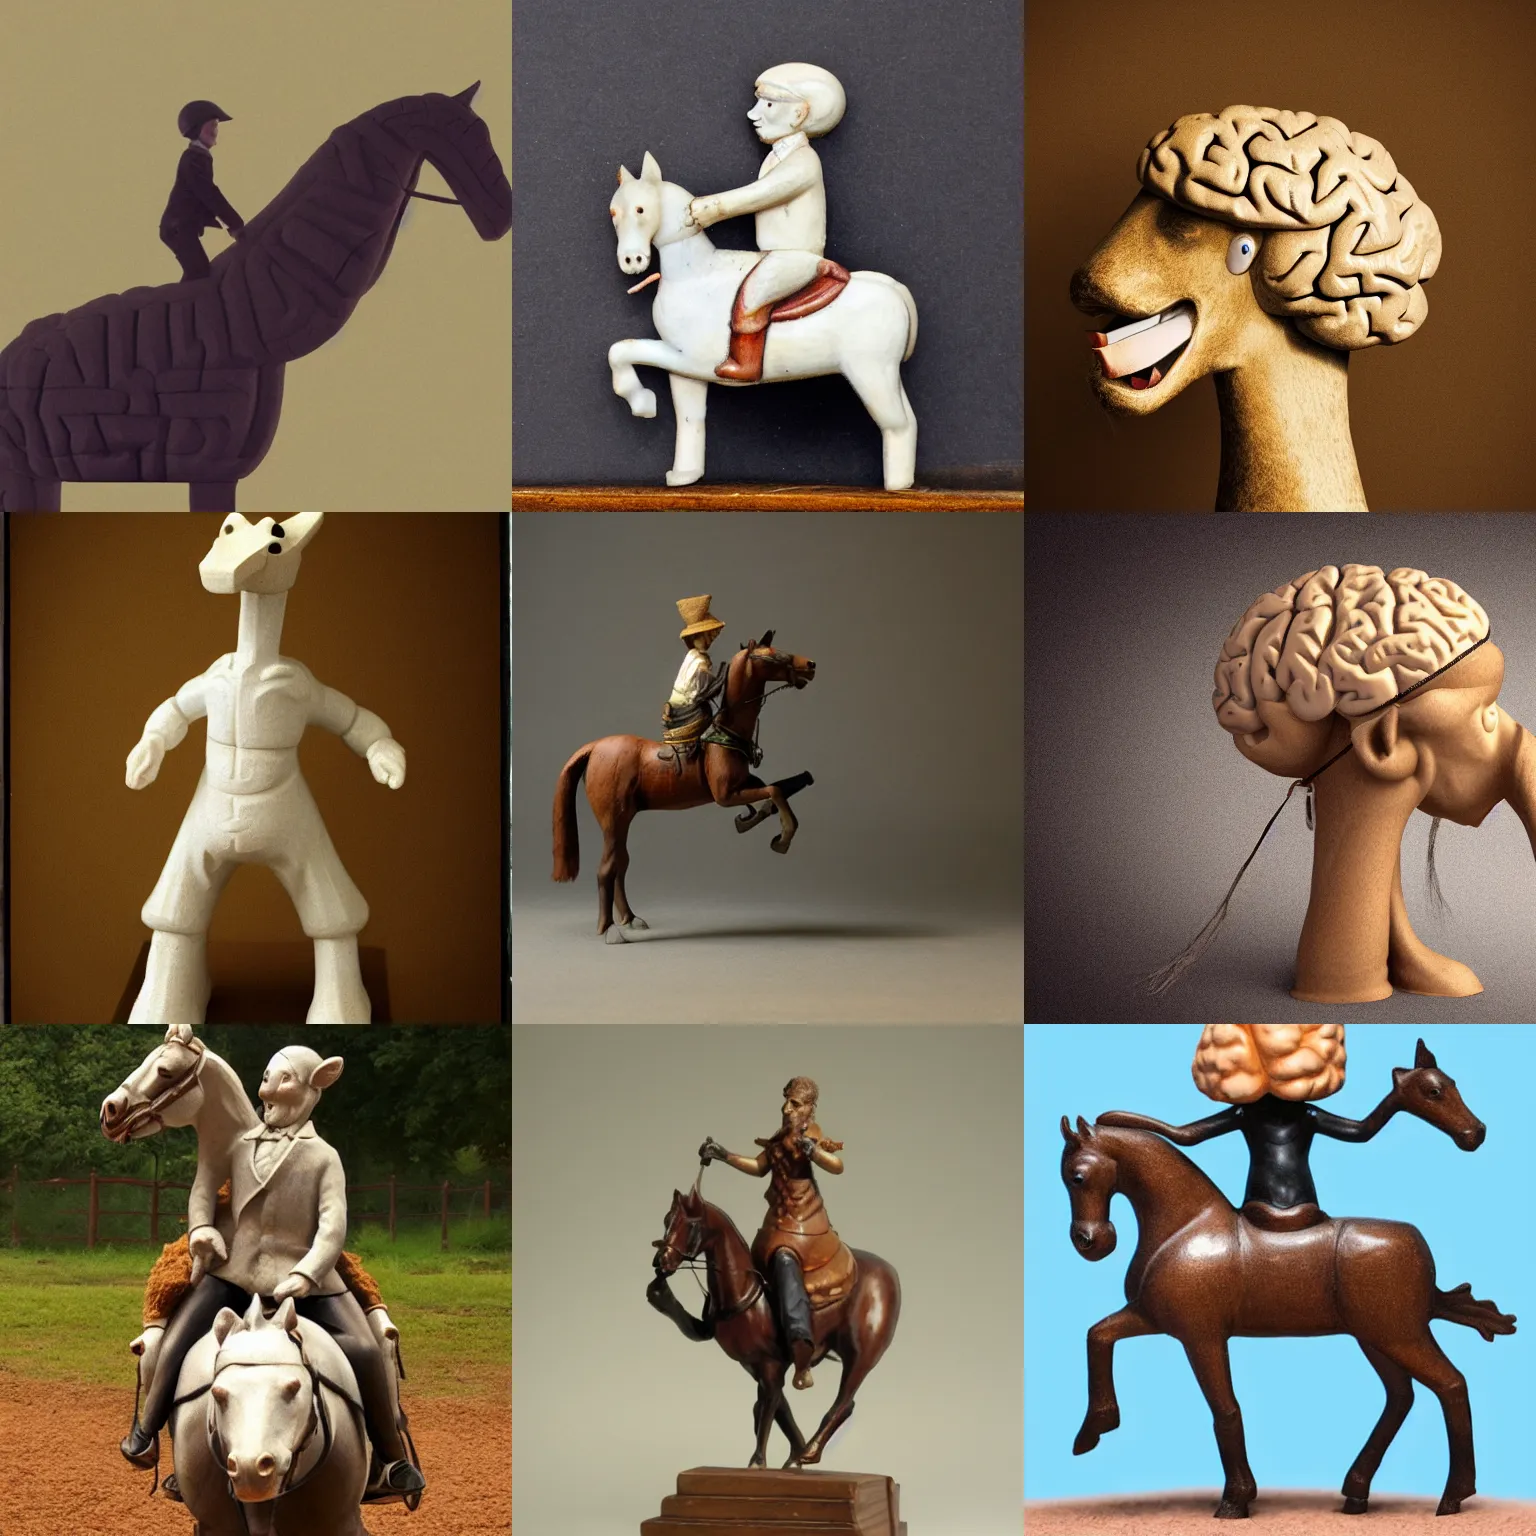 Prompt: anthropomorphic brain riding horse